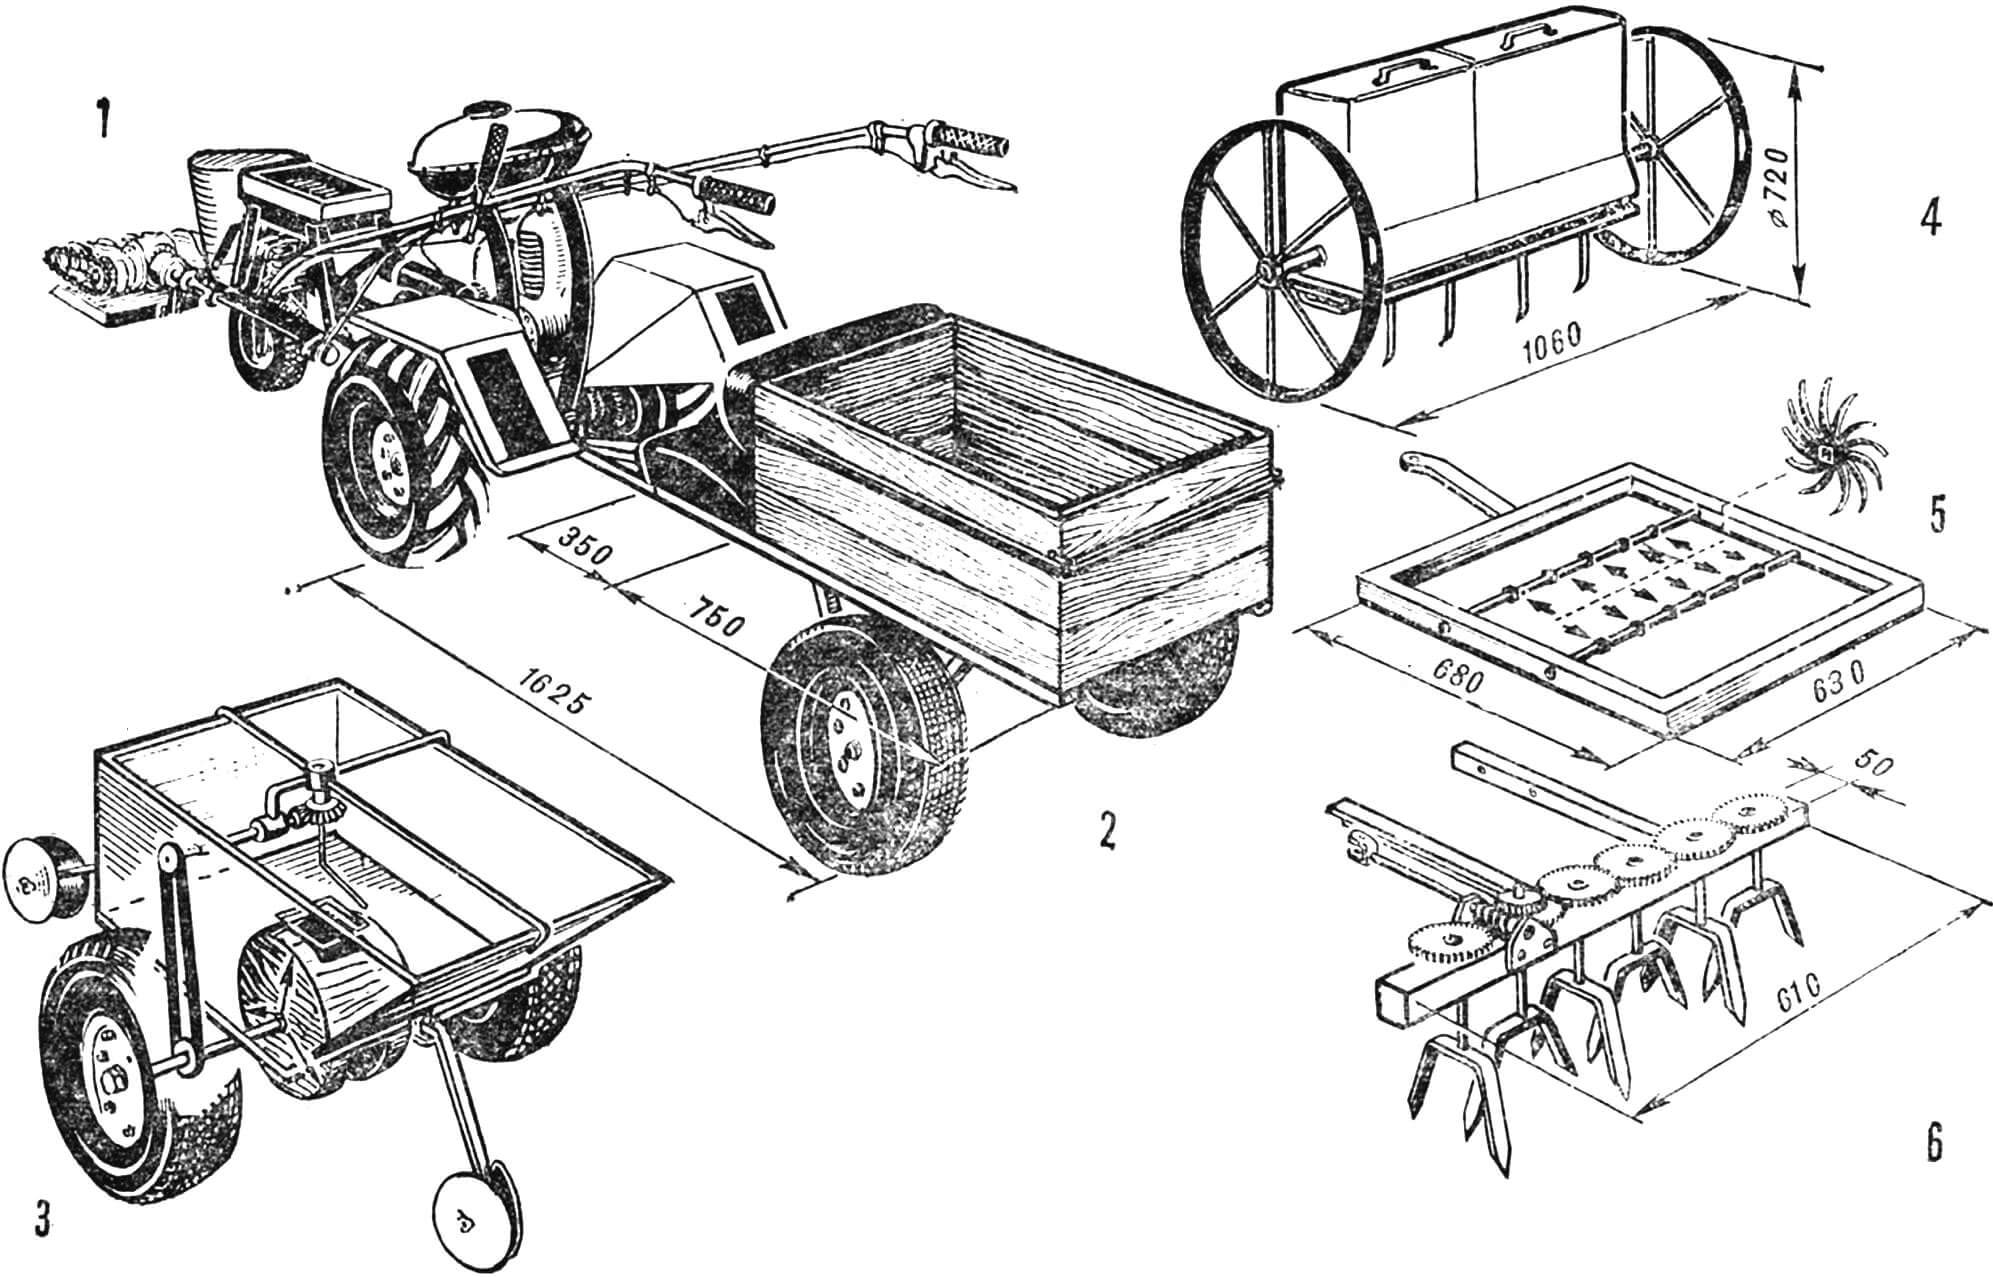 Рис. 1. Универсальная сельскохозяйственная машина УСММ-2 «Золушка» (базовая модель) с комплектом прицепных и навесных приспособлений